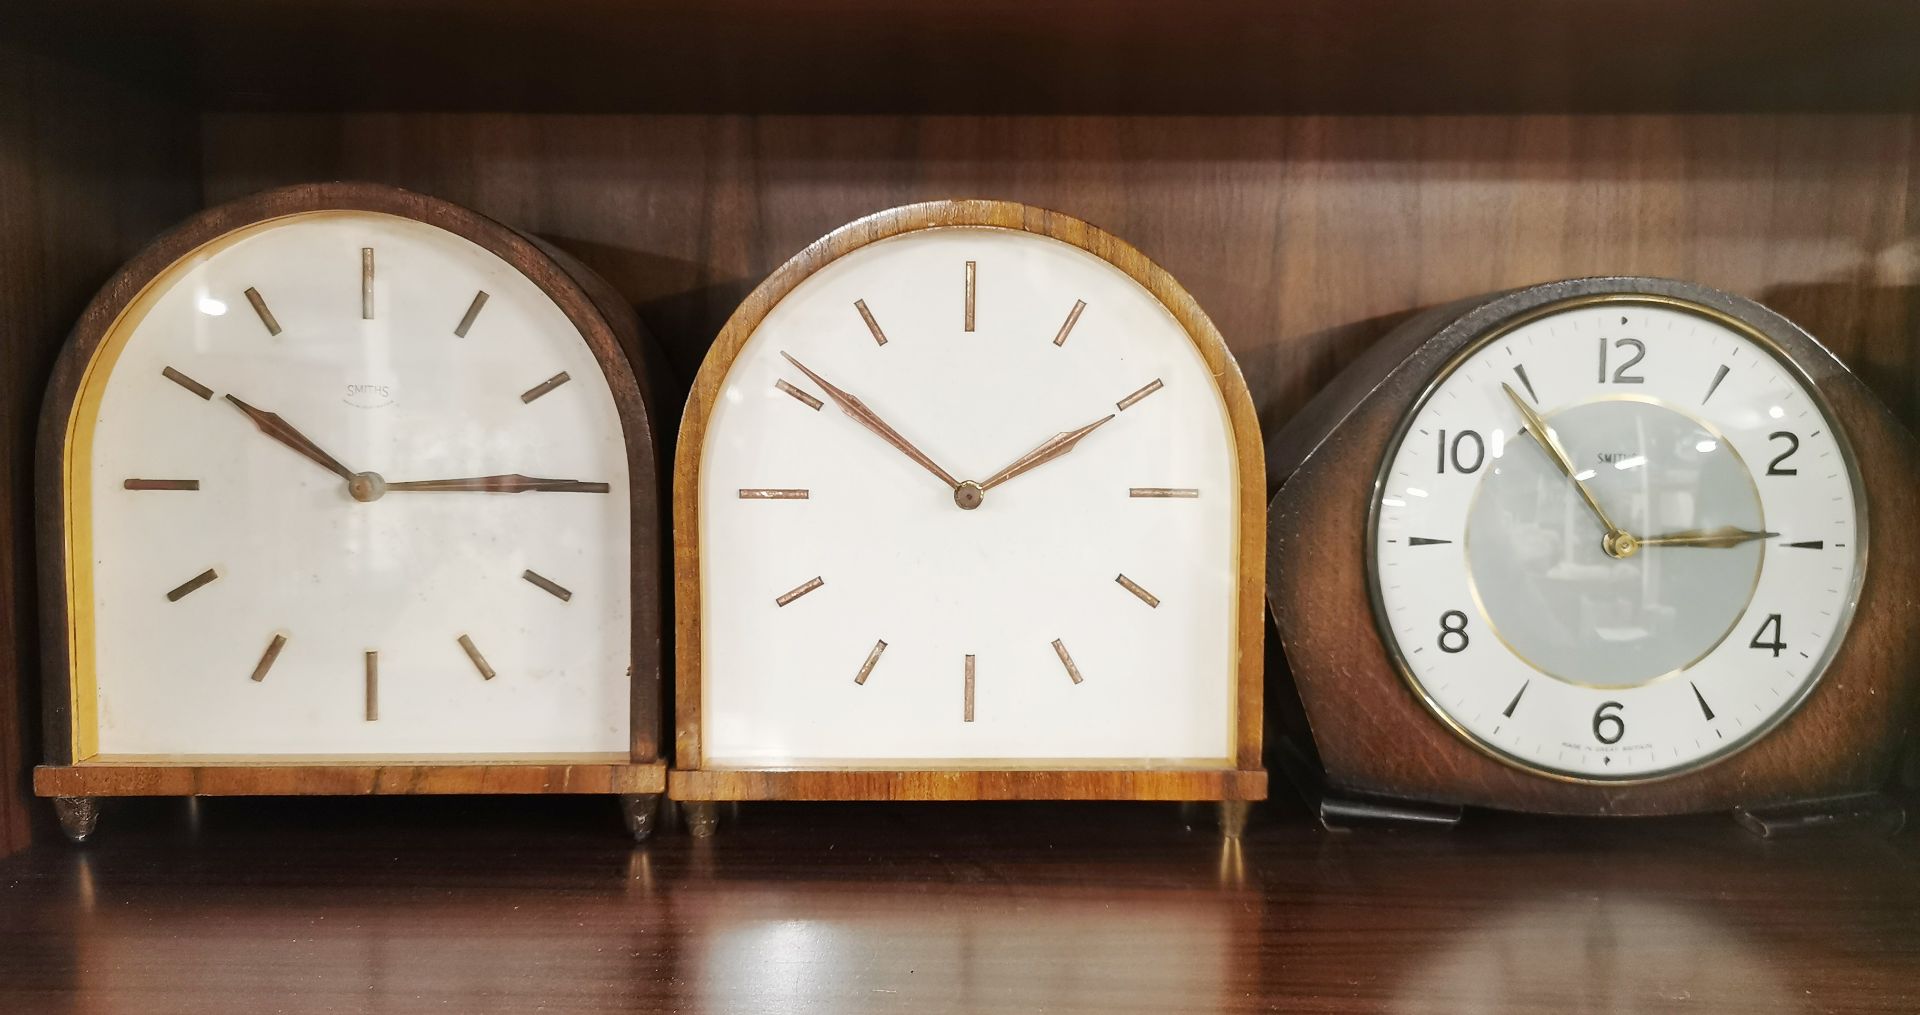 Five vintage mantel clocks and a volt meter, H. 20cm. - Image 3 of 3